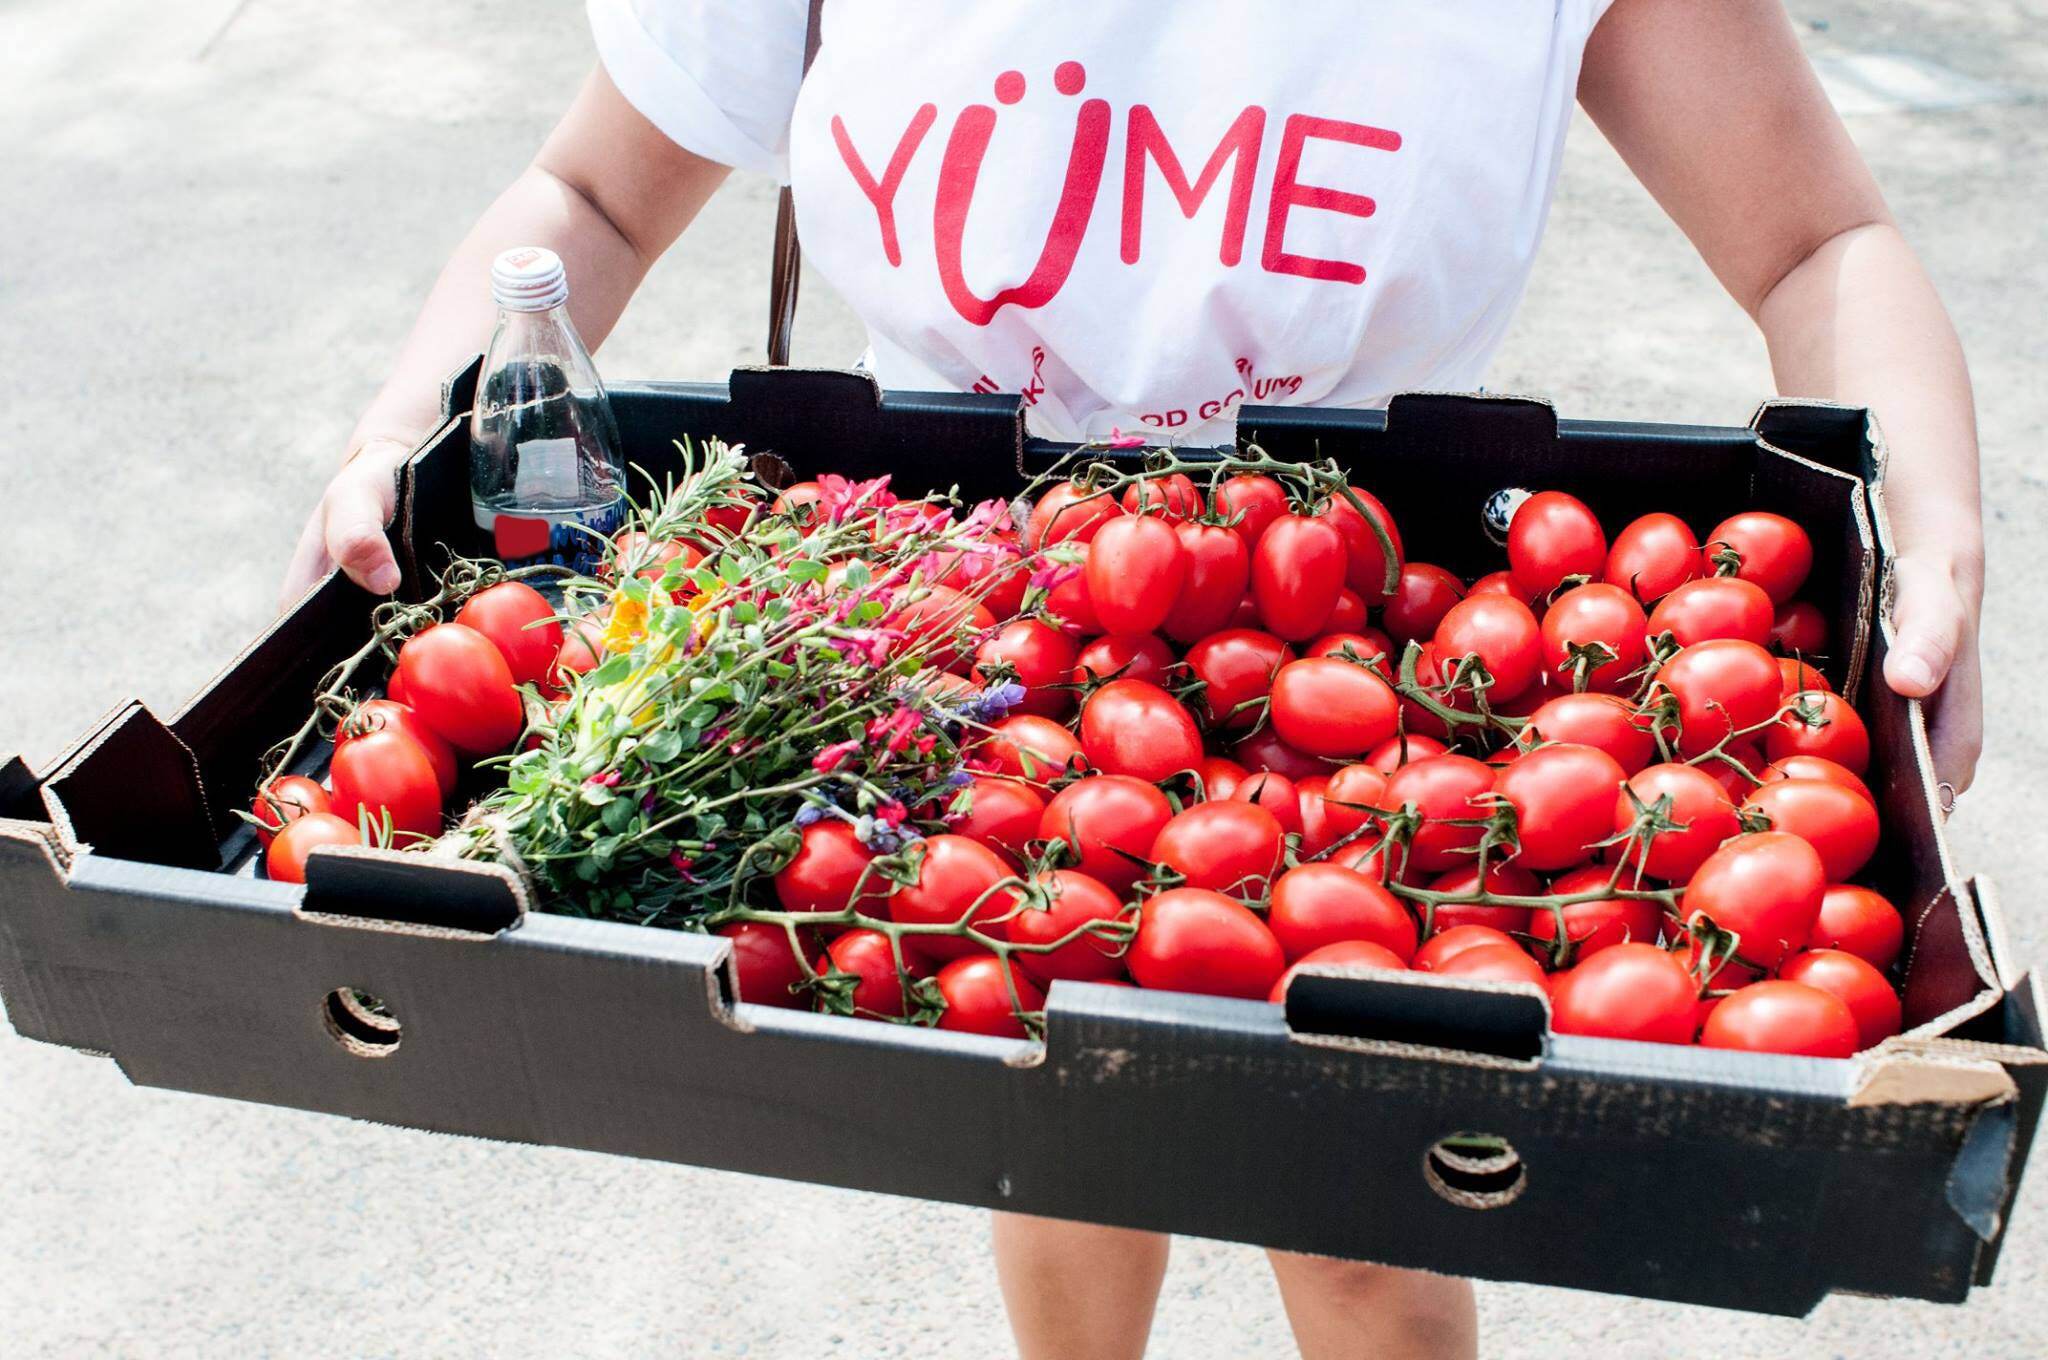 yumes-platform-revolutionizes-food-waste-management-in-australia